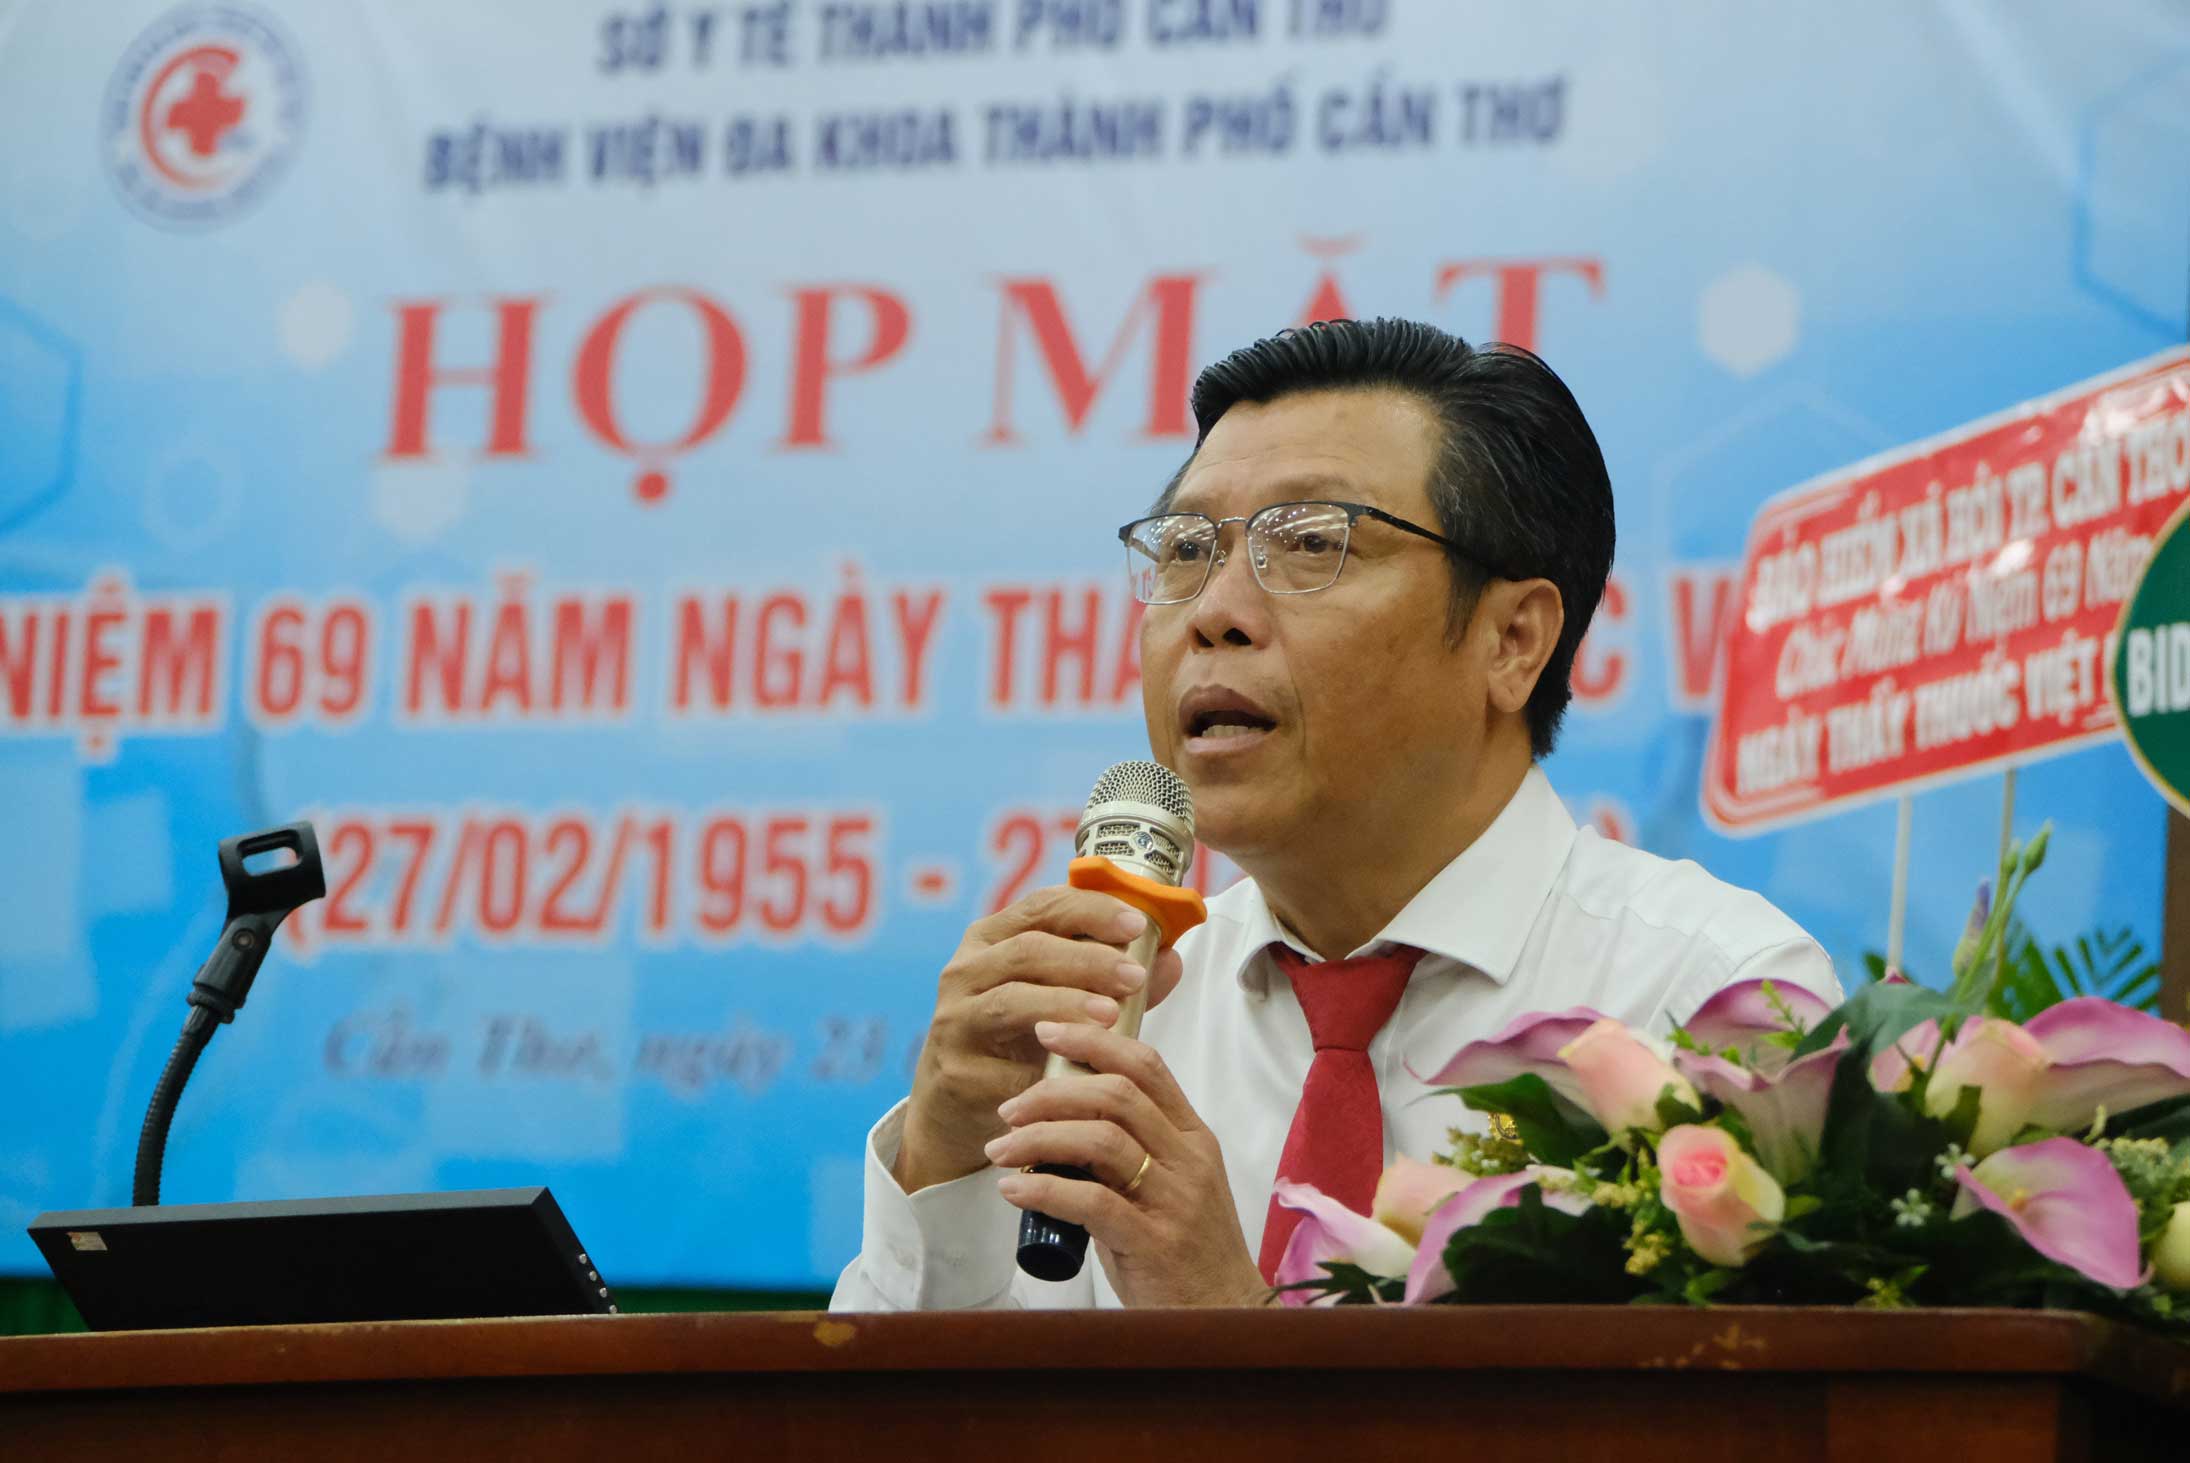 Phó Giám đốc BVĐK TP Cần Thơ Huỳnh Minh Phú phát biểu. Ảnh: Mỹ Ly